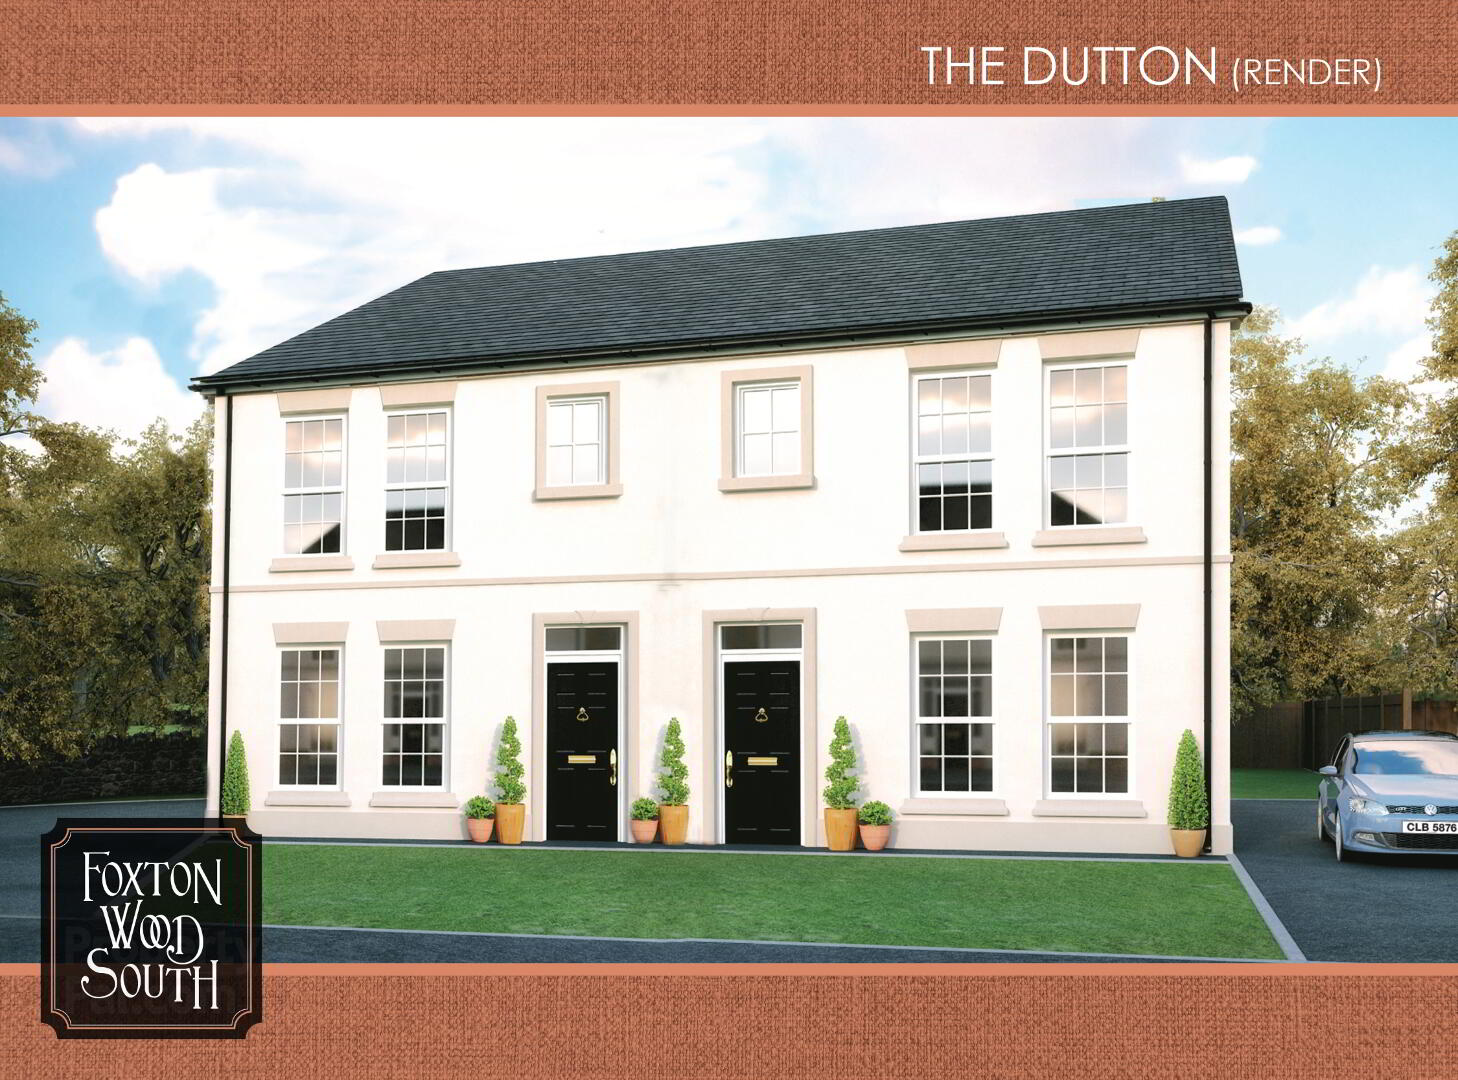 The Dutton